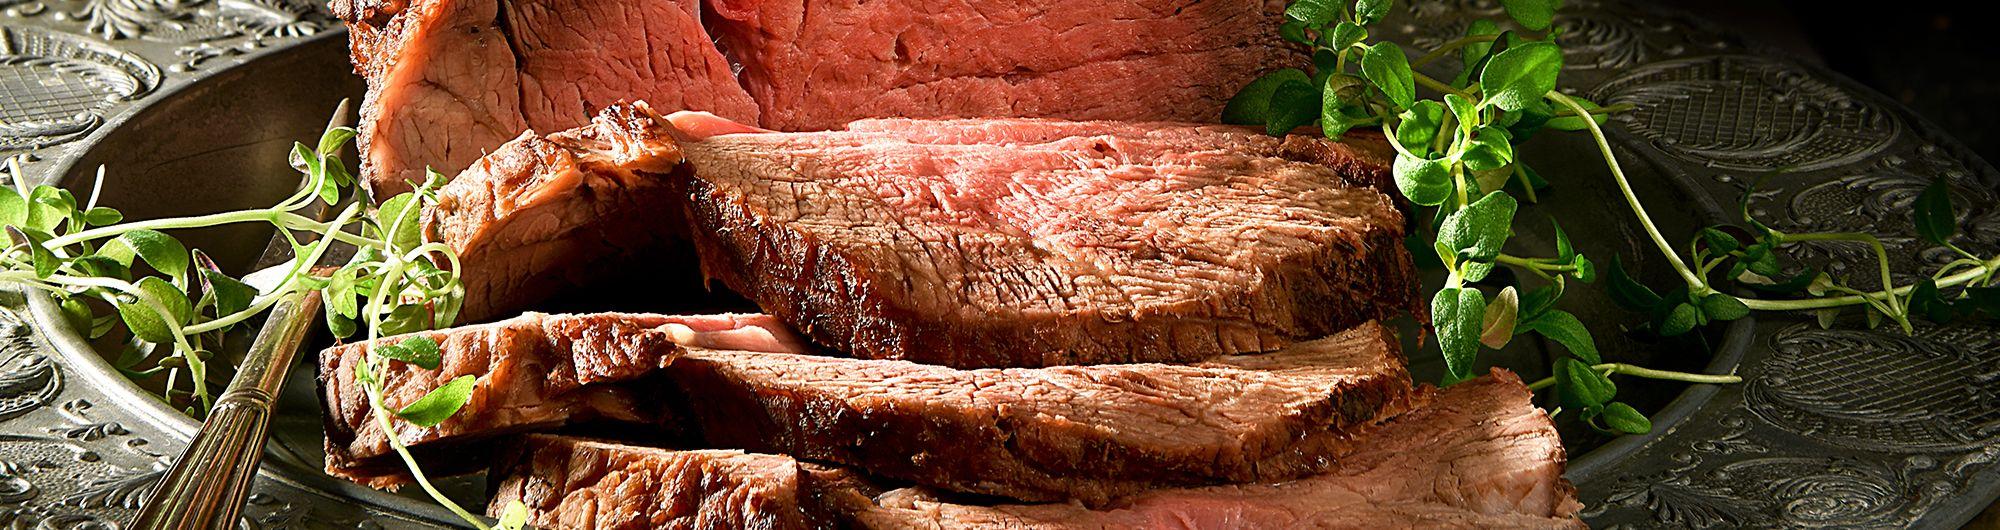 carne bovina cortada em fatias